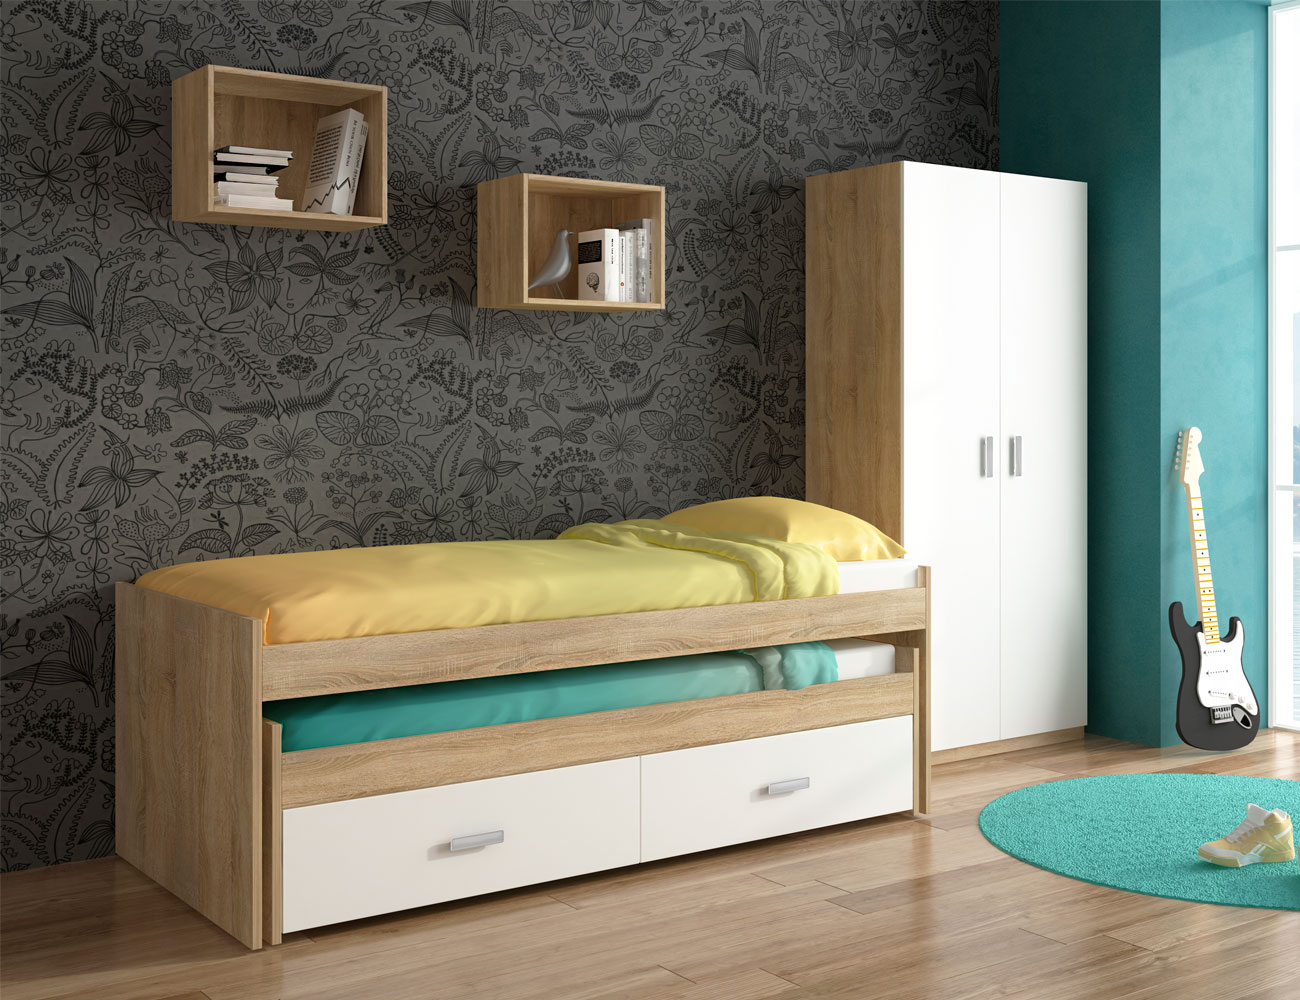 Dormitorio juvenil armario cama compacto cajonera cambrian blanco